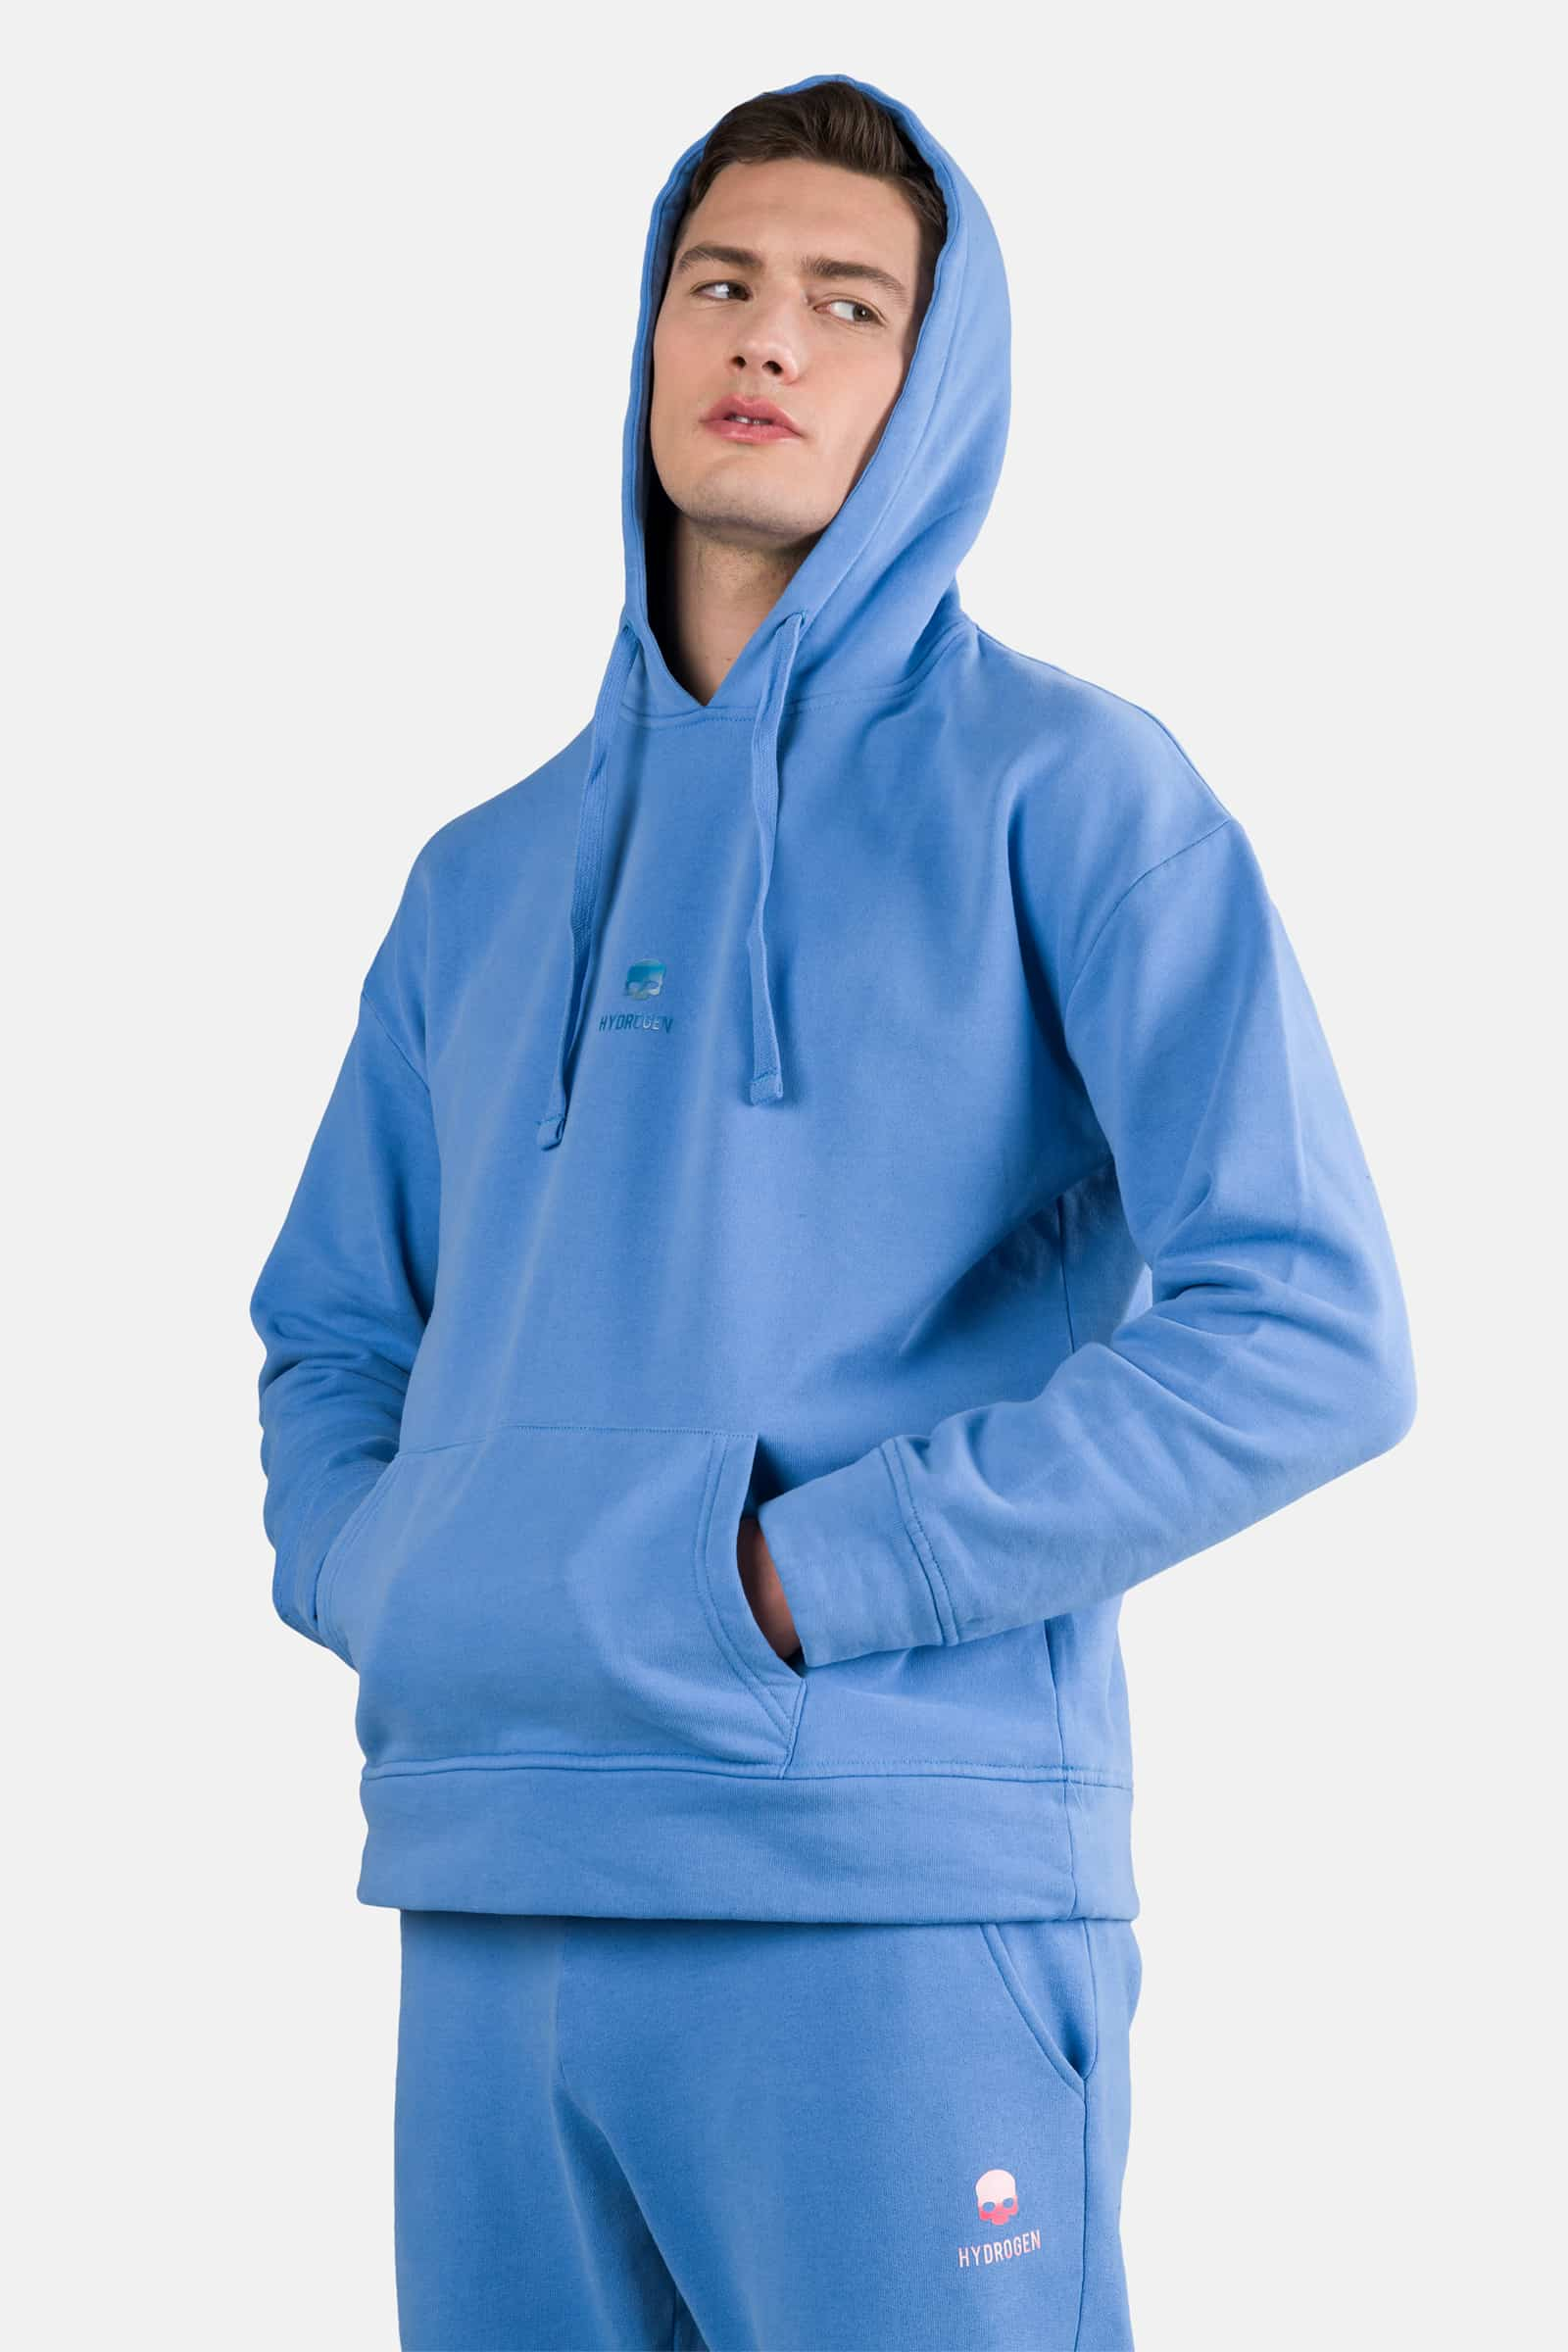 SKULL HOODIE - SKY BLUE - Hydrogen - Luxury Sportwear